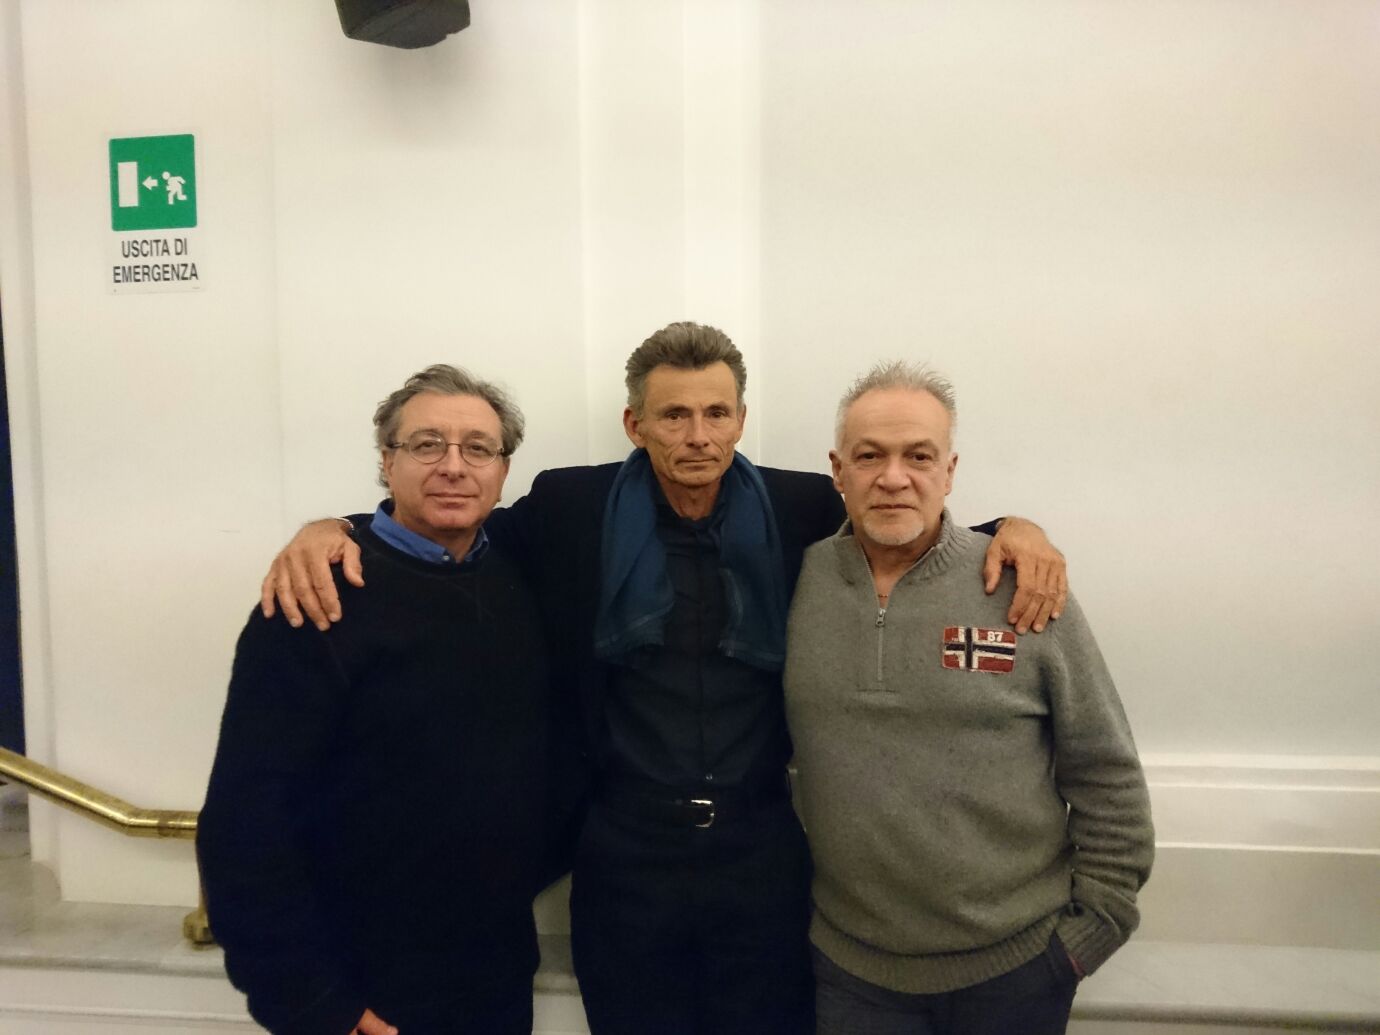 Gli autori Leonardo Santoli, Carlo Bellincampi e Ezio Alessio Gensini ©Claudia Fiorelli